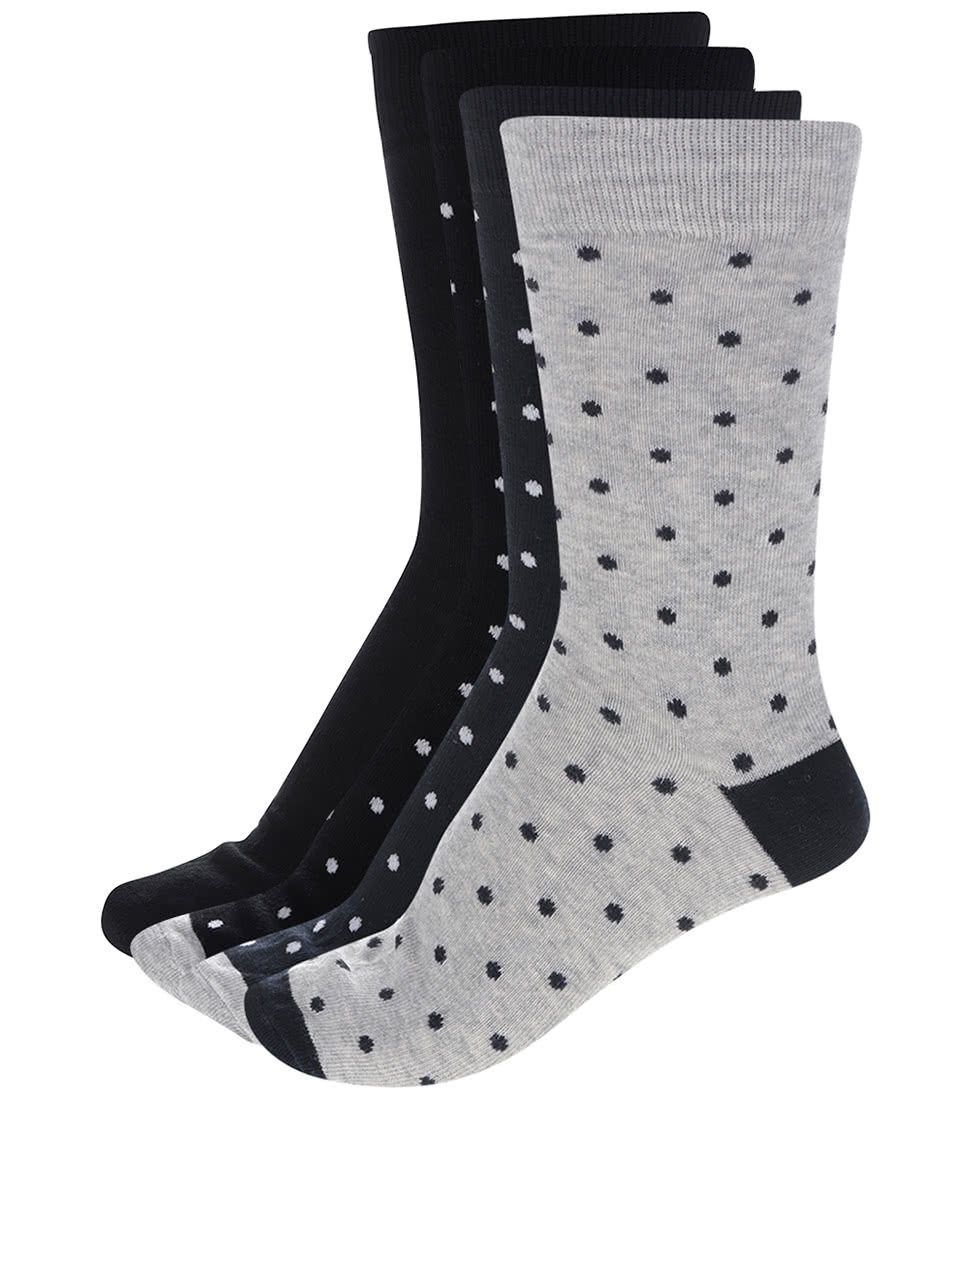 Sada čtyř párů ponožek s puntíky v černé, šedé a modré barvě ONLY & SONS Niels